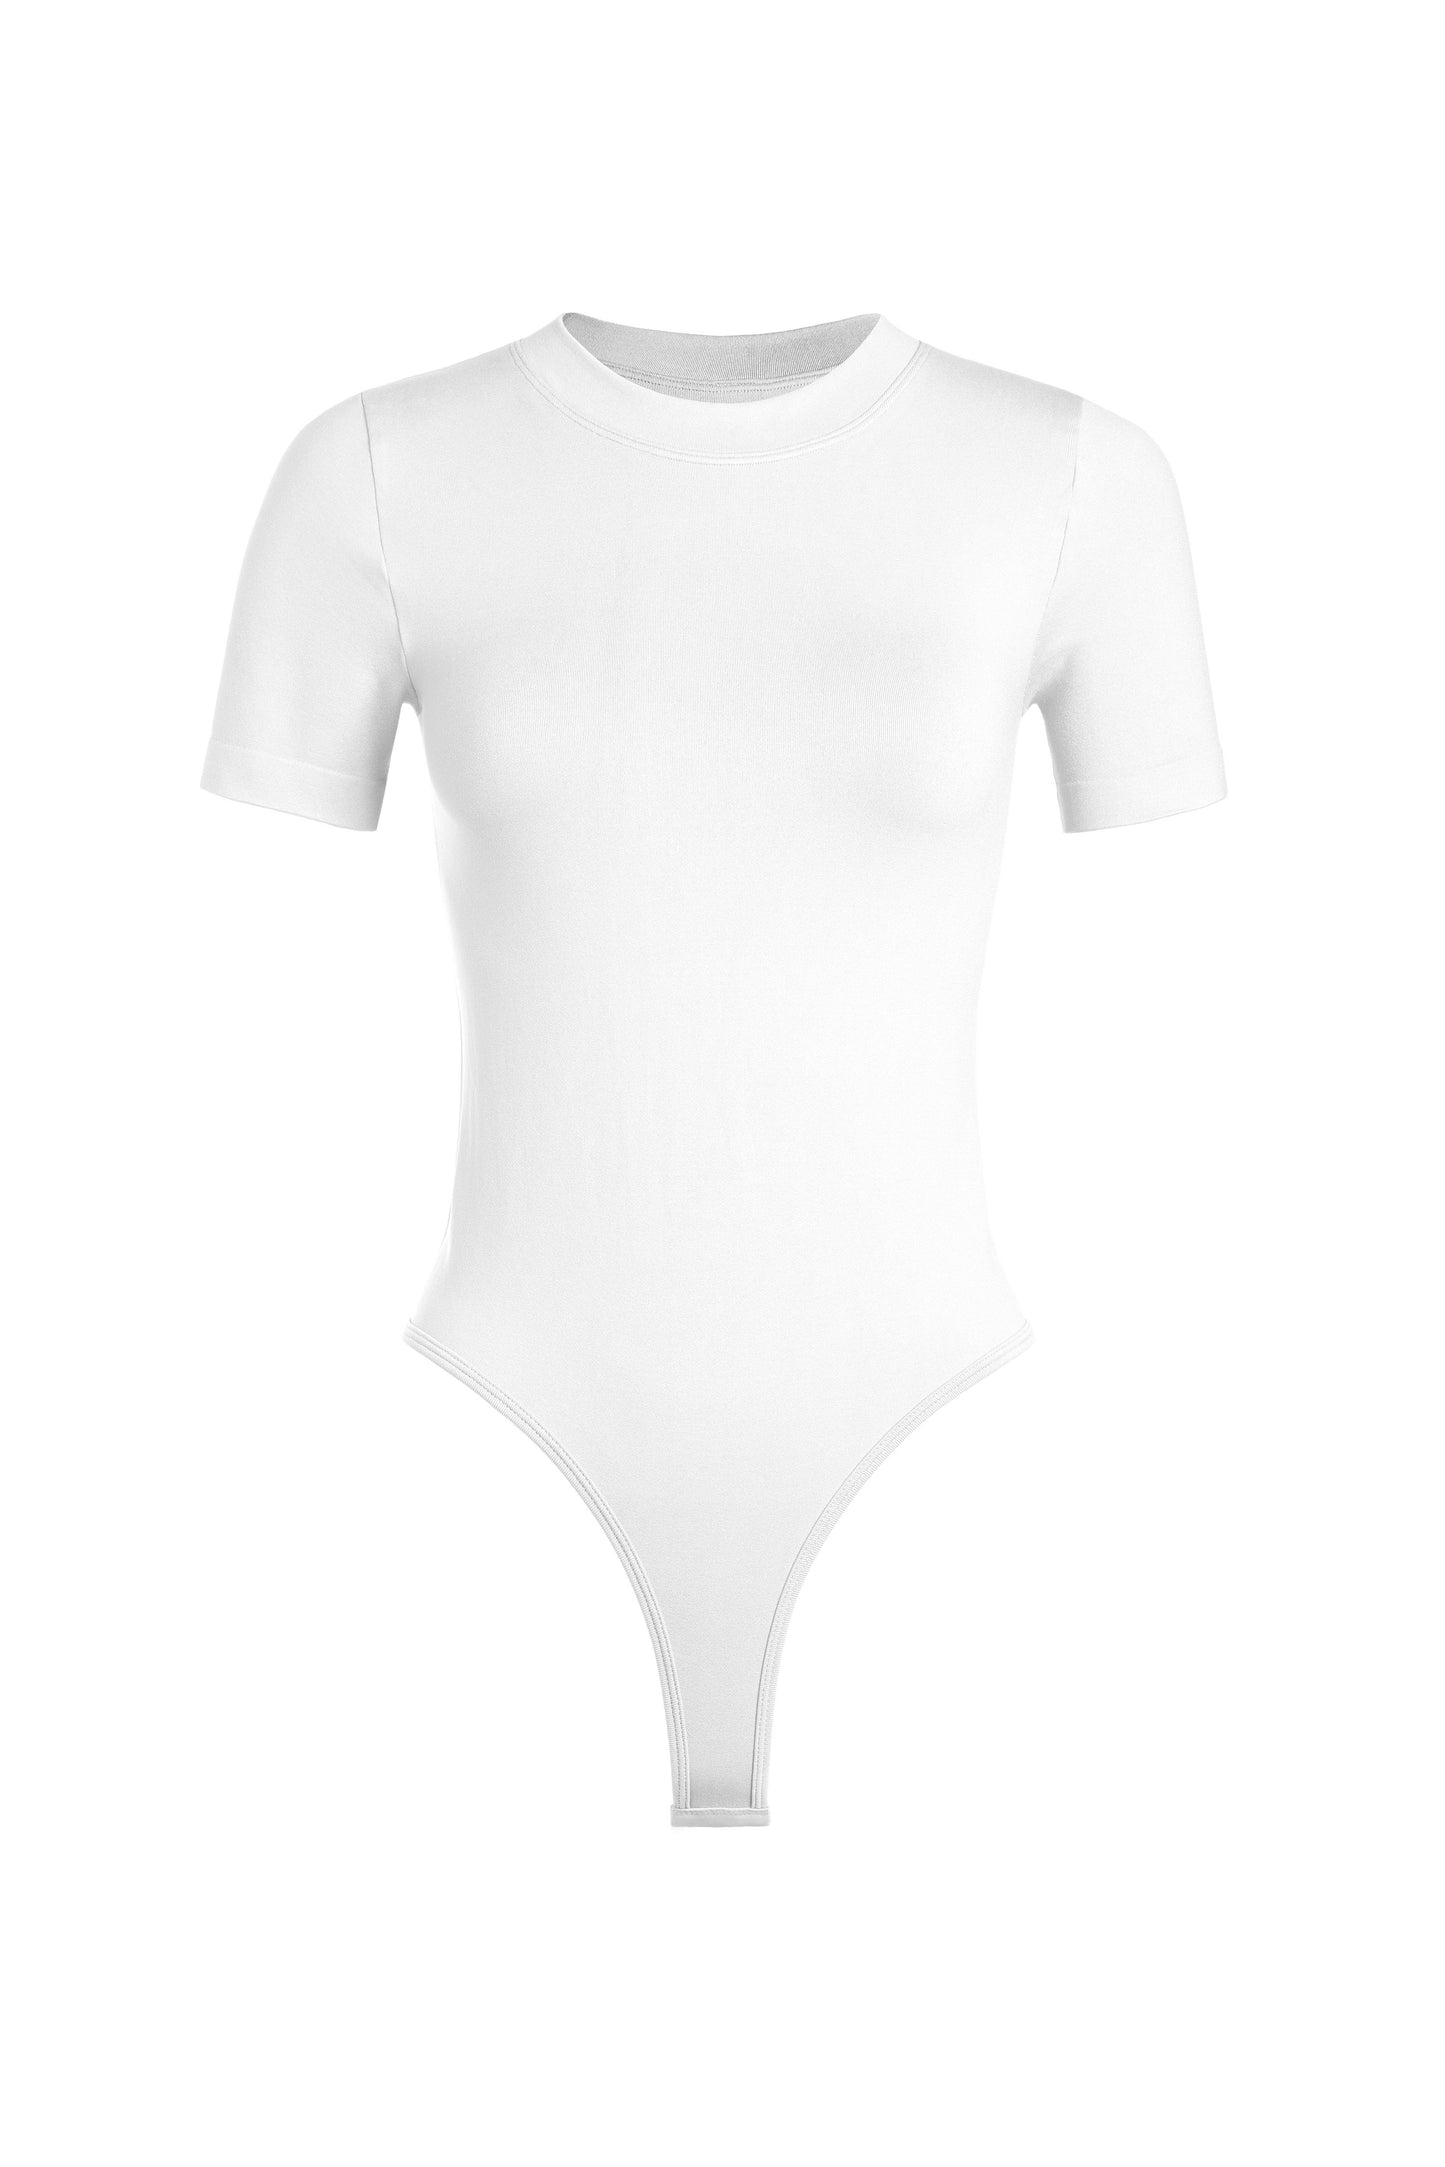 “Skin” Short Sleeve Bodysuit